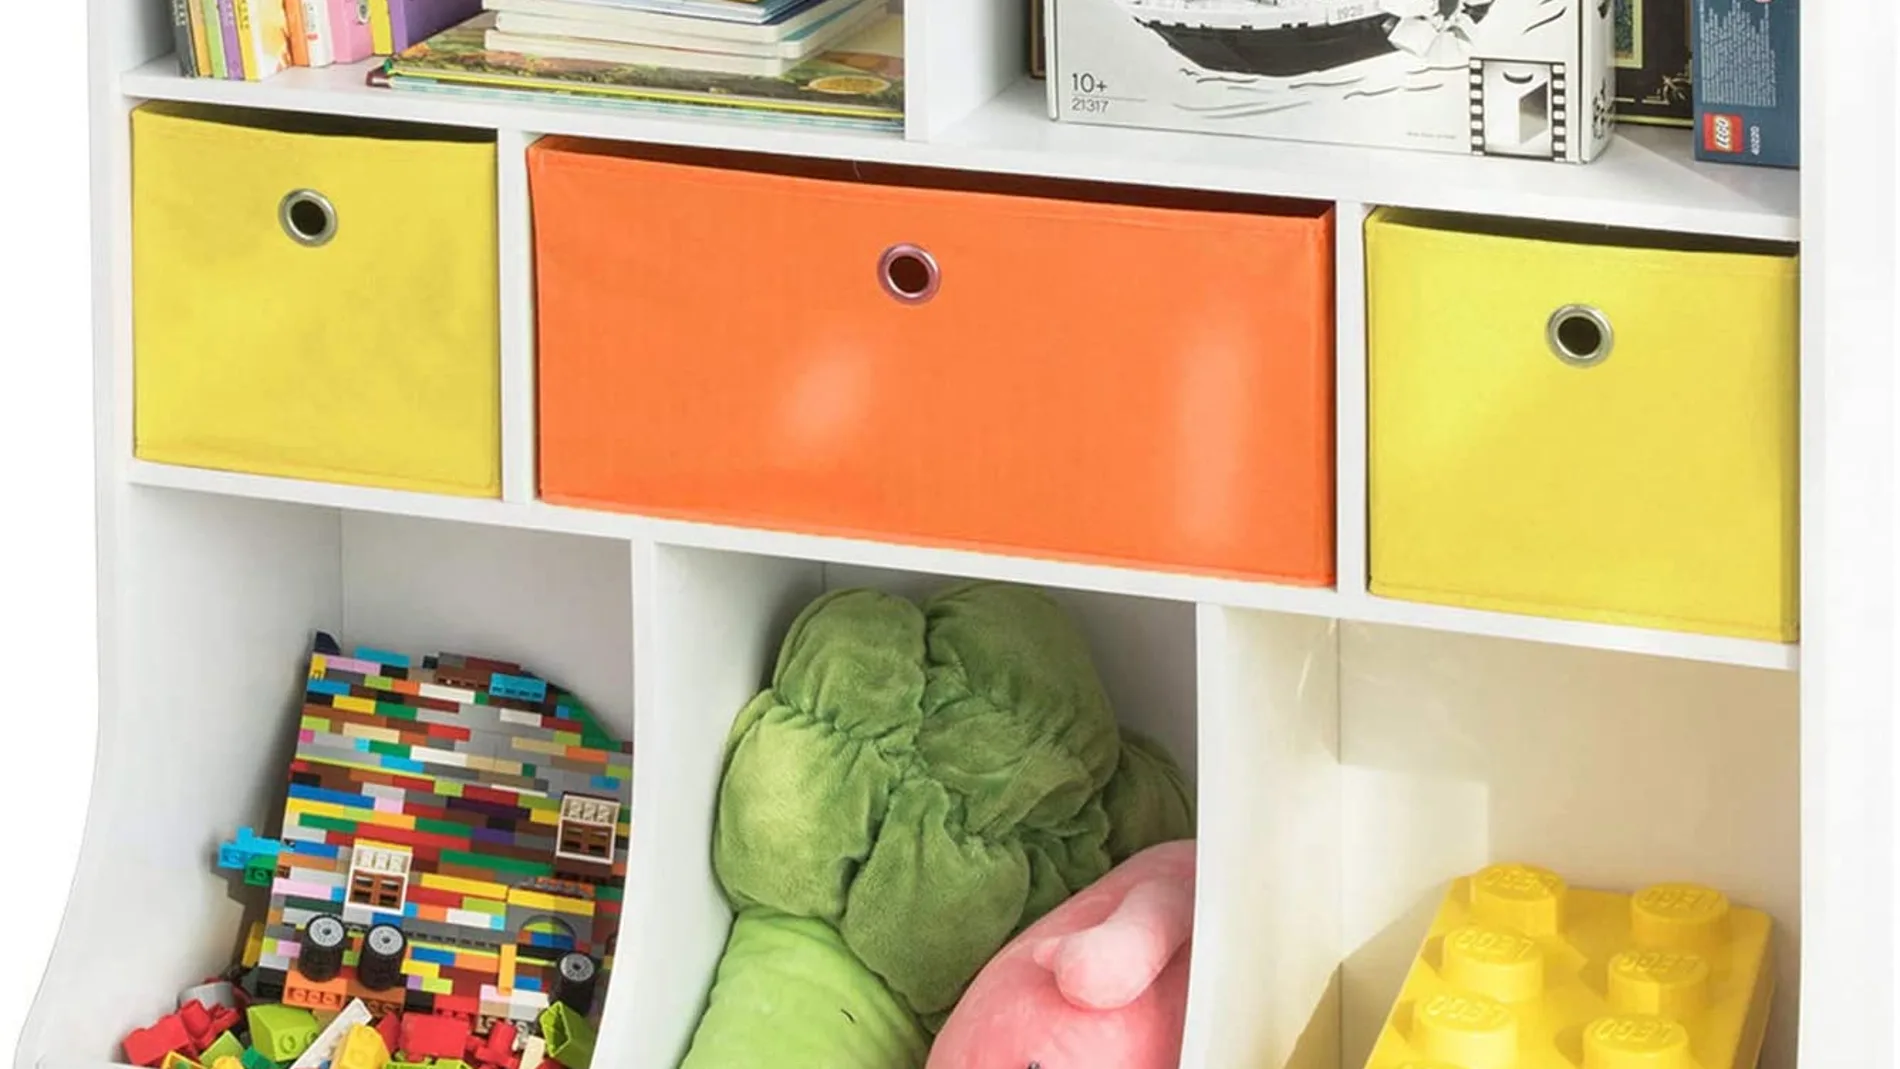 Estantería infantil con 9 cajas tela Organizador juguetes niños